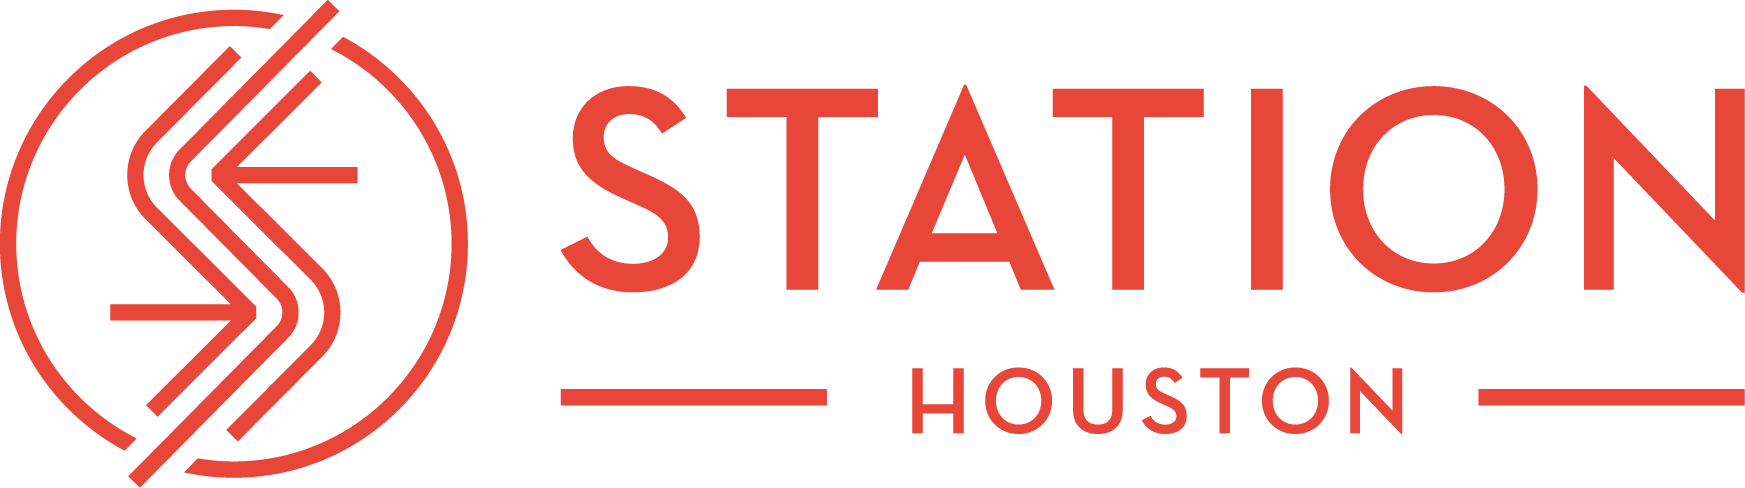 Houston Logo - station-logo-breakout-horiz-red | Station Houston